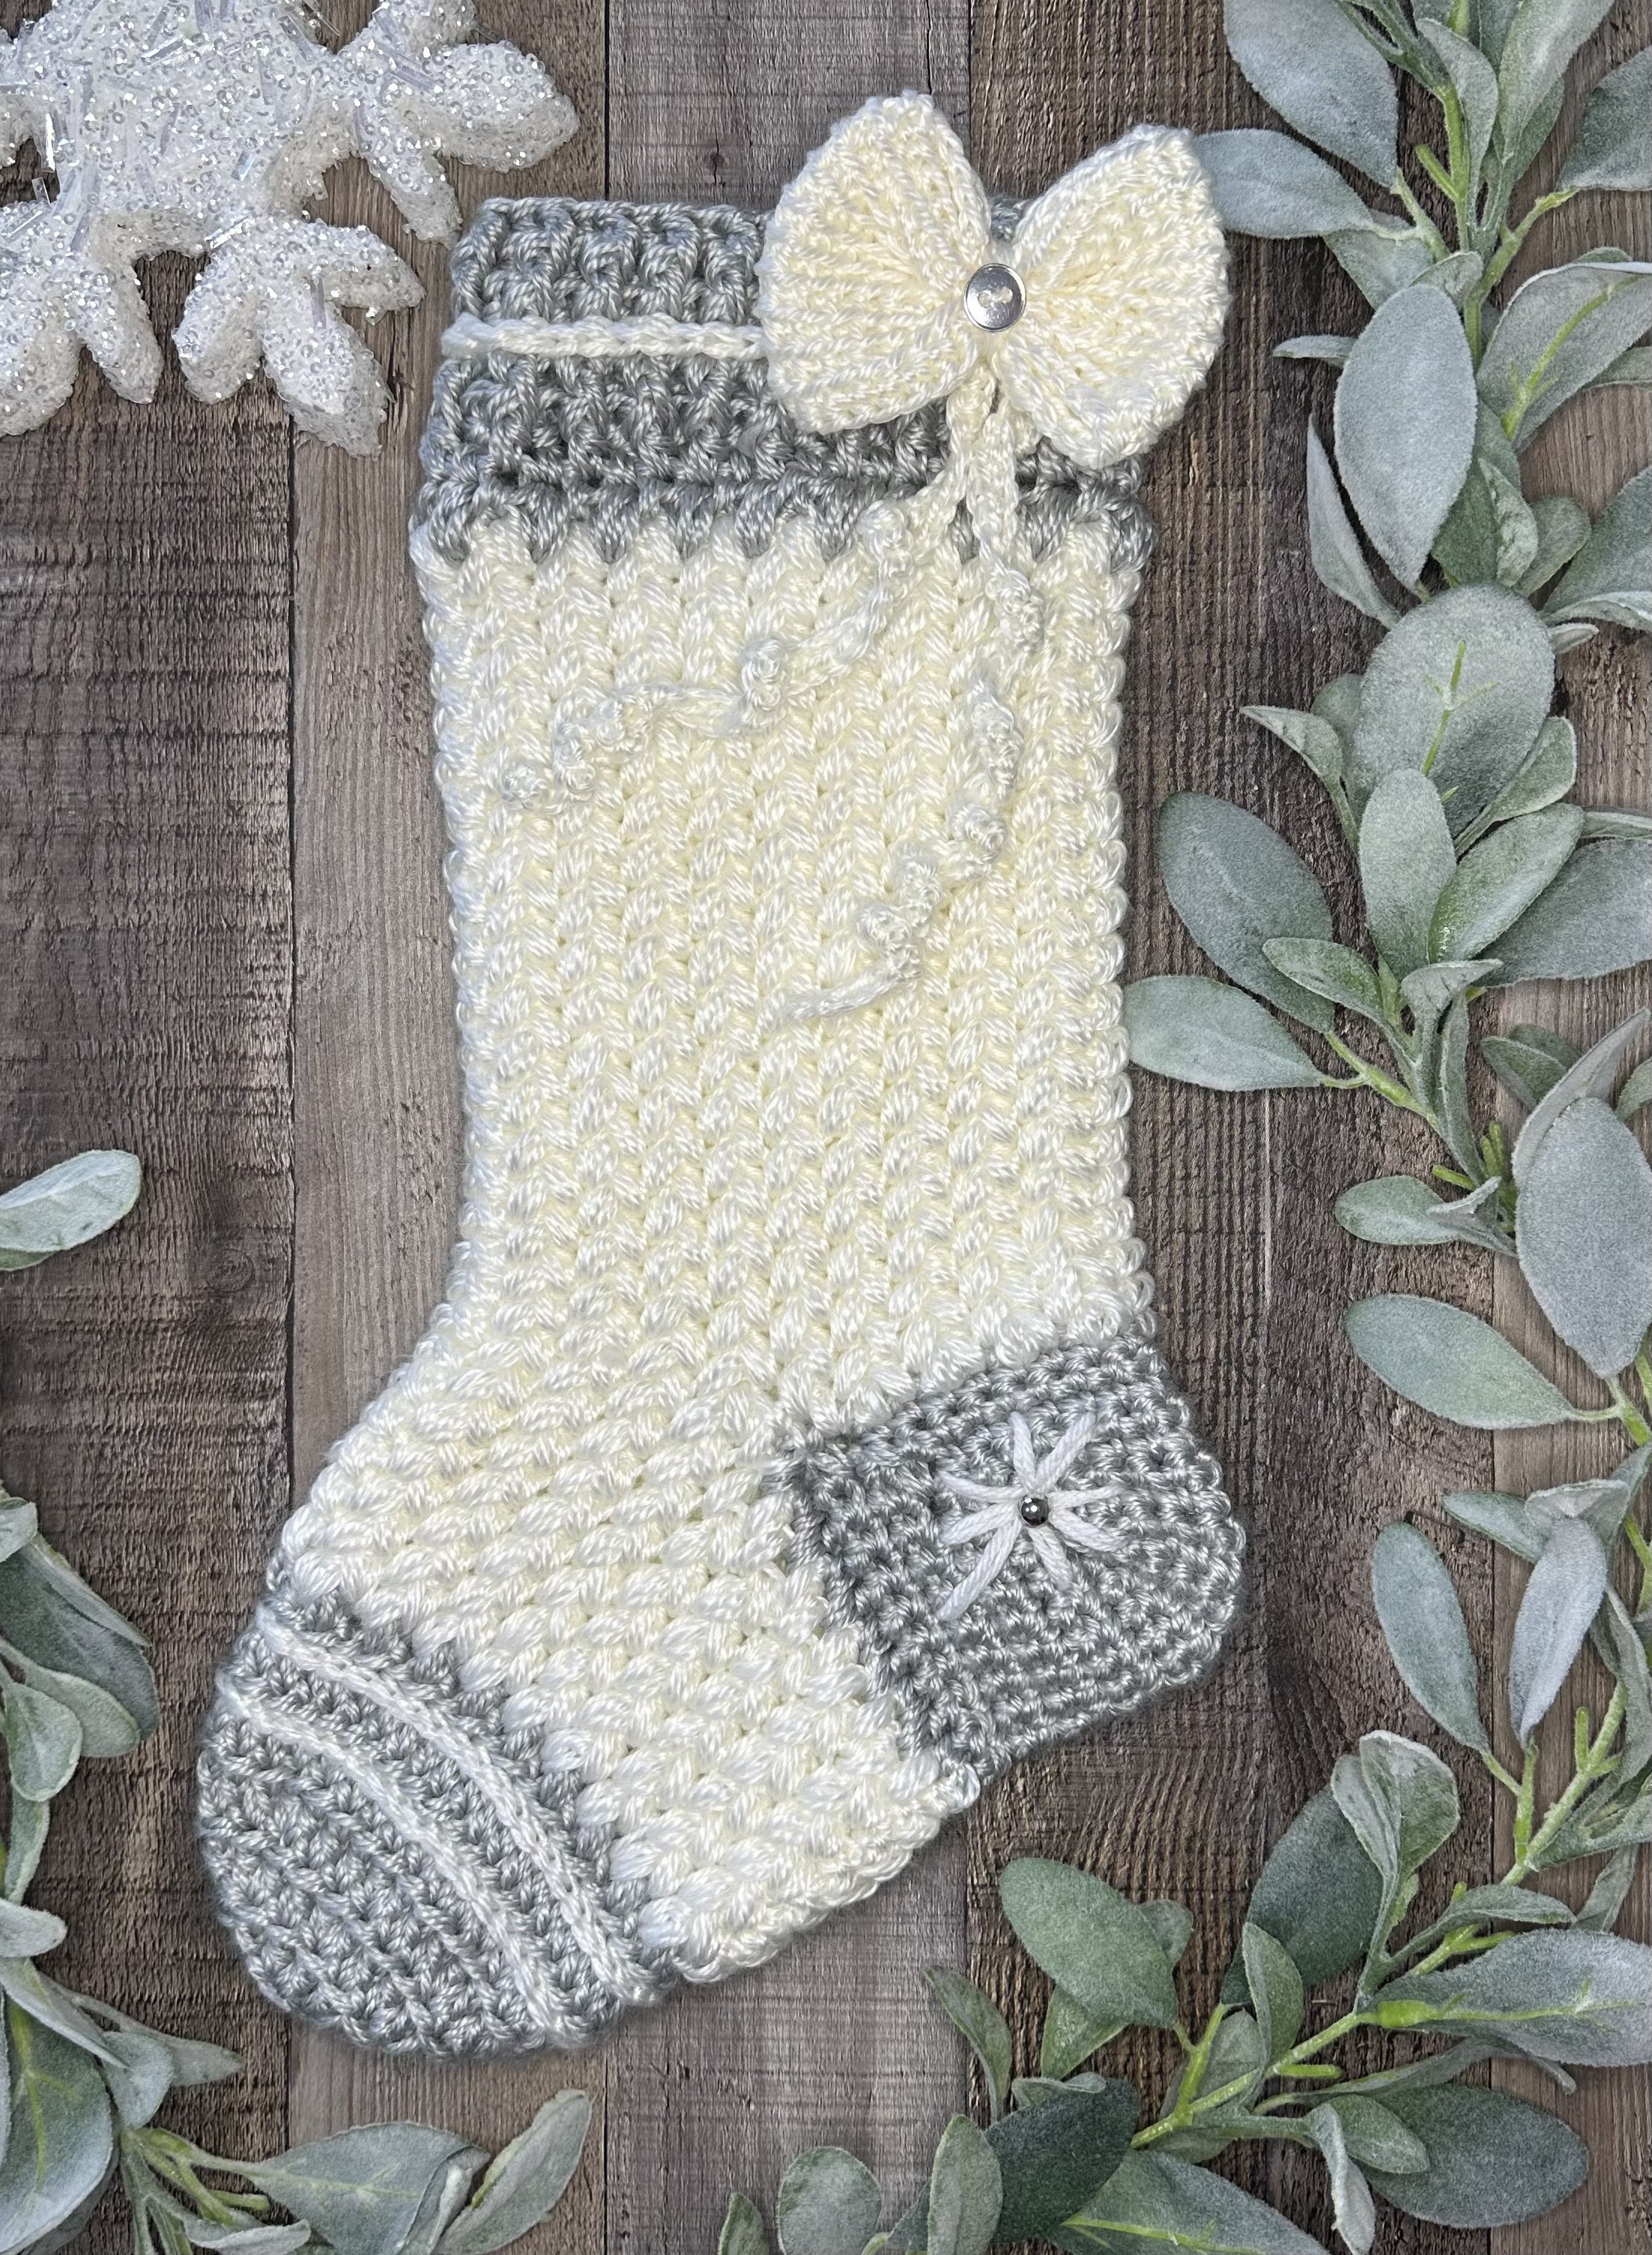 Tangled Stocking Crochet Pattern — tlcrochet